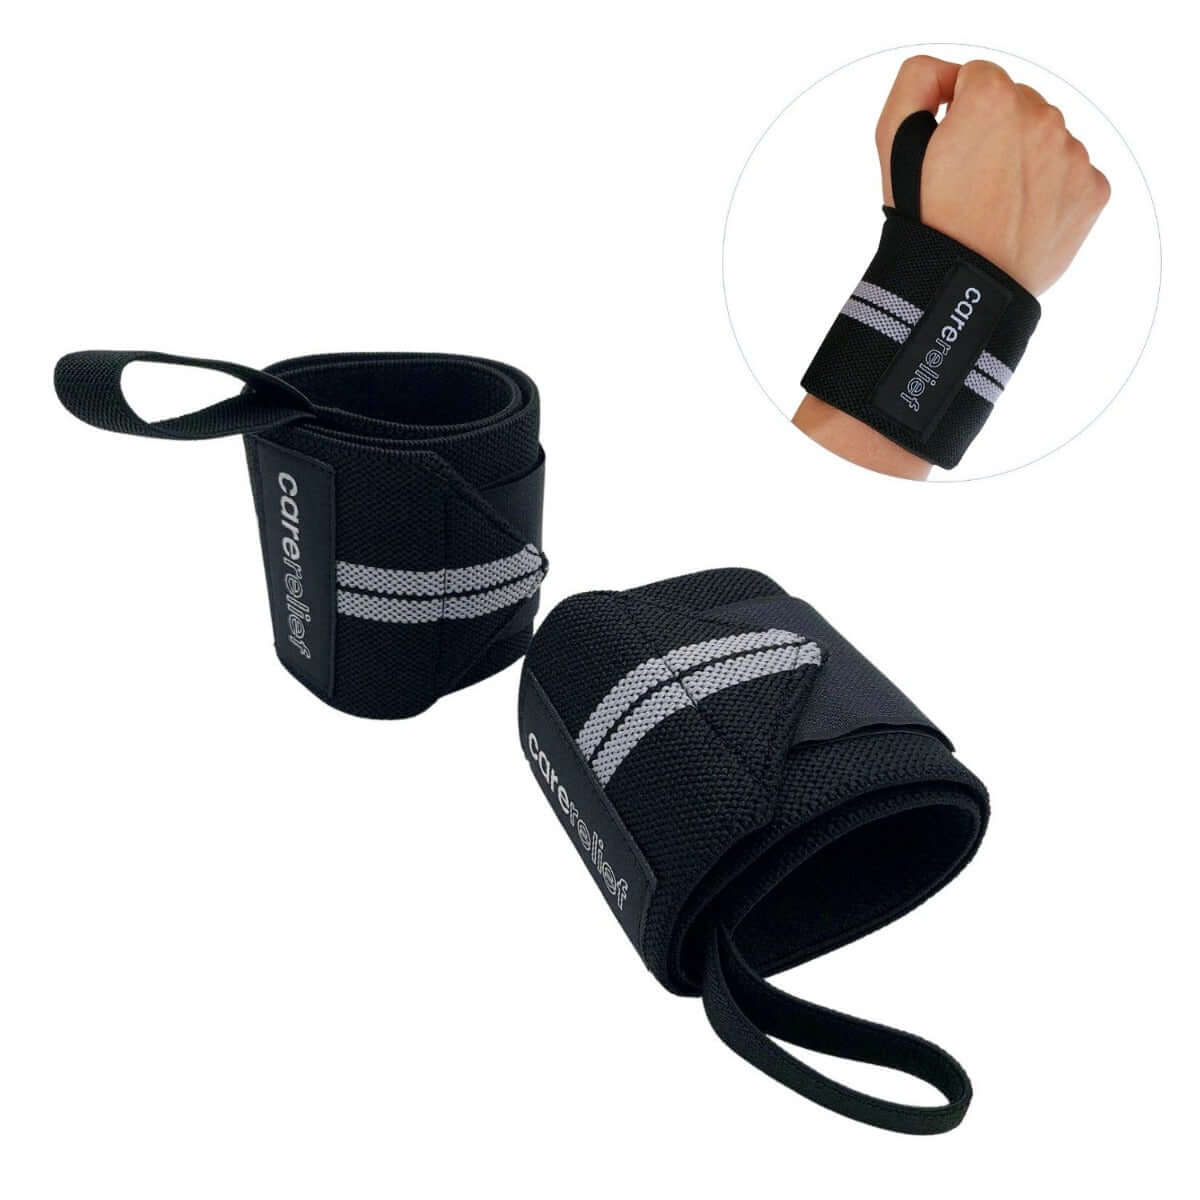 Køb Wrist Wraps med håndledsstøtte til sport og træning håndleddene, sort/grå, 8 x 55 cm. Køb wrist wraps håndledsbeskytter bind HL30 hos Carerelief.dk.